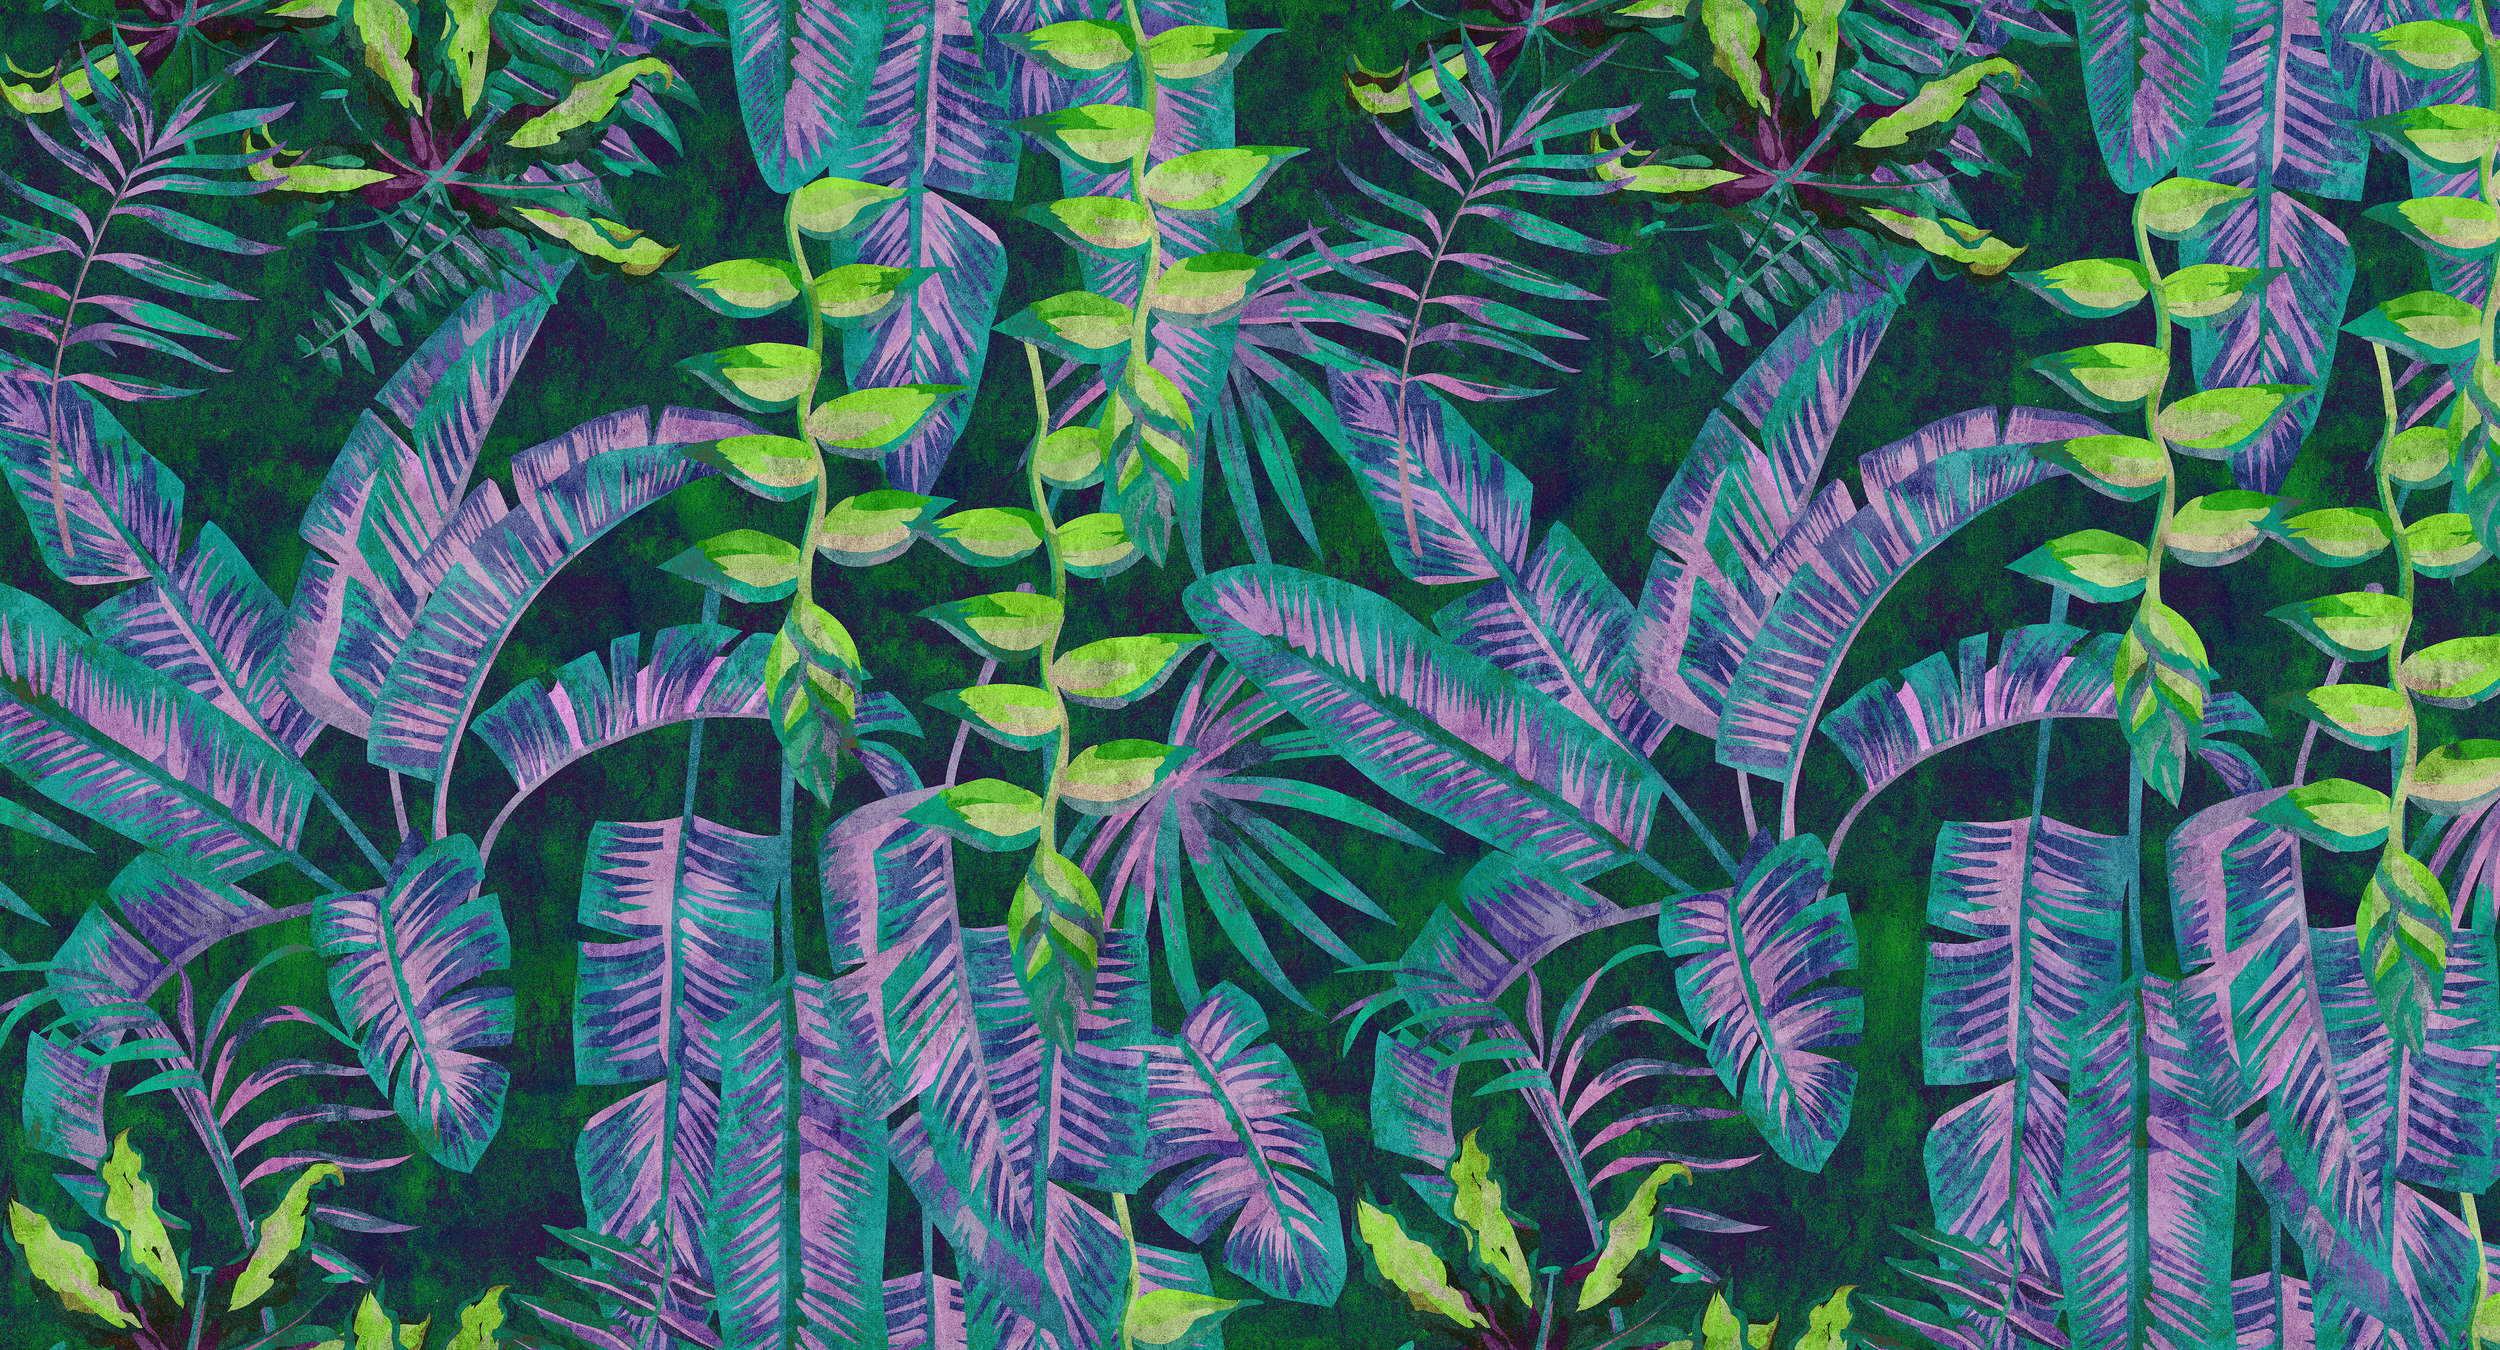             Tropicana 5 - Papel pintado selva con colores neón en estructura de papel secante - Azul, Verde | Vellón liso Premium
        